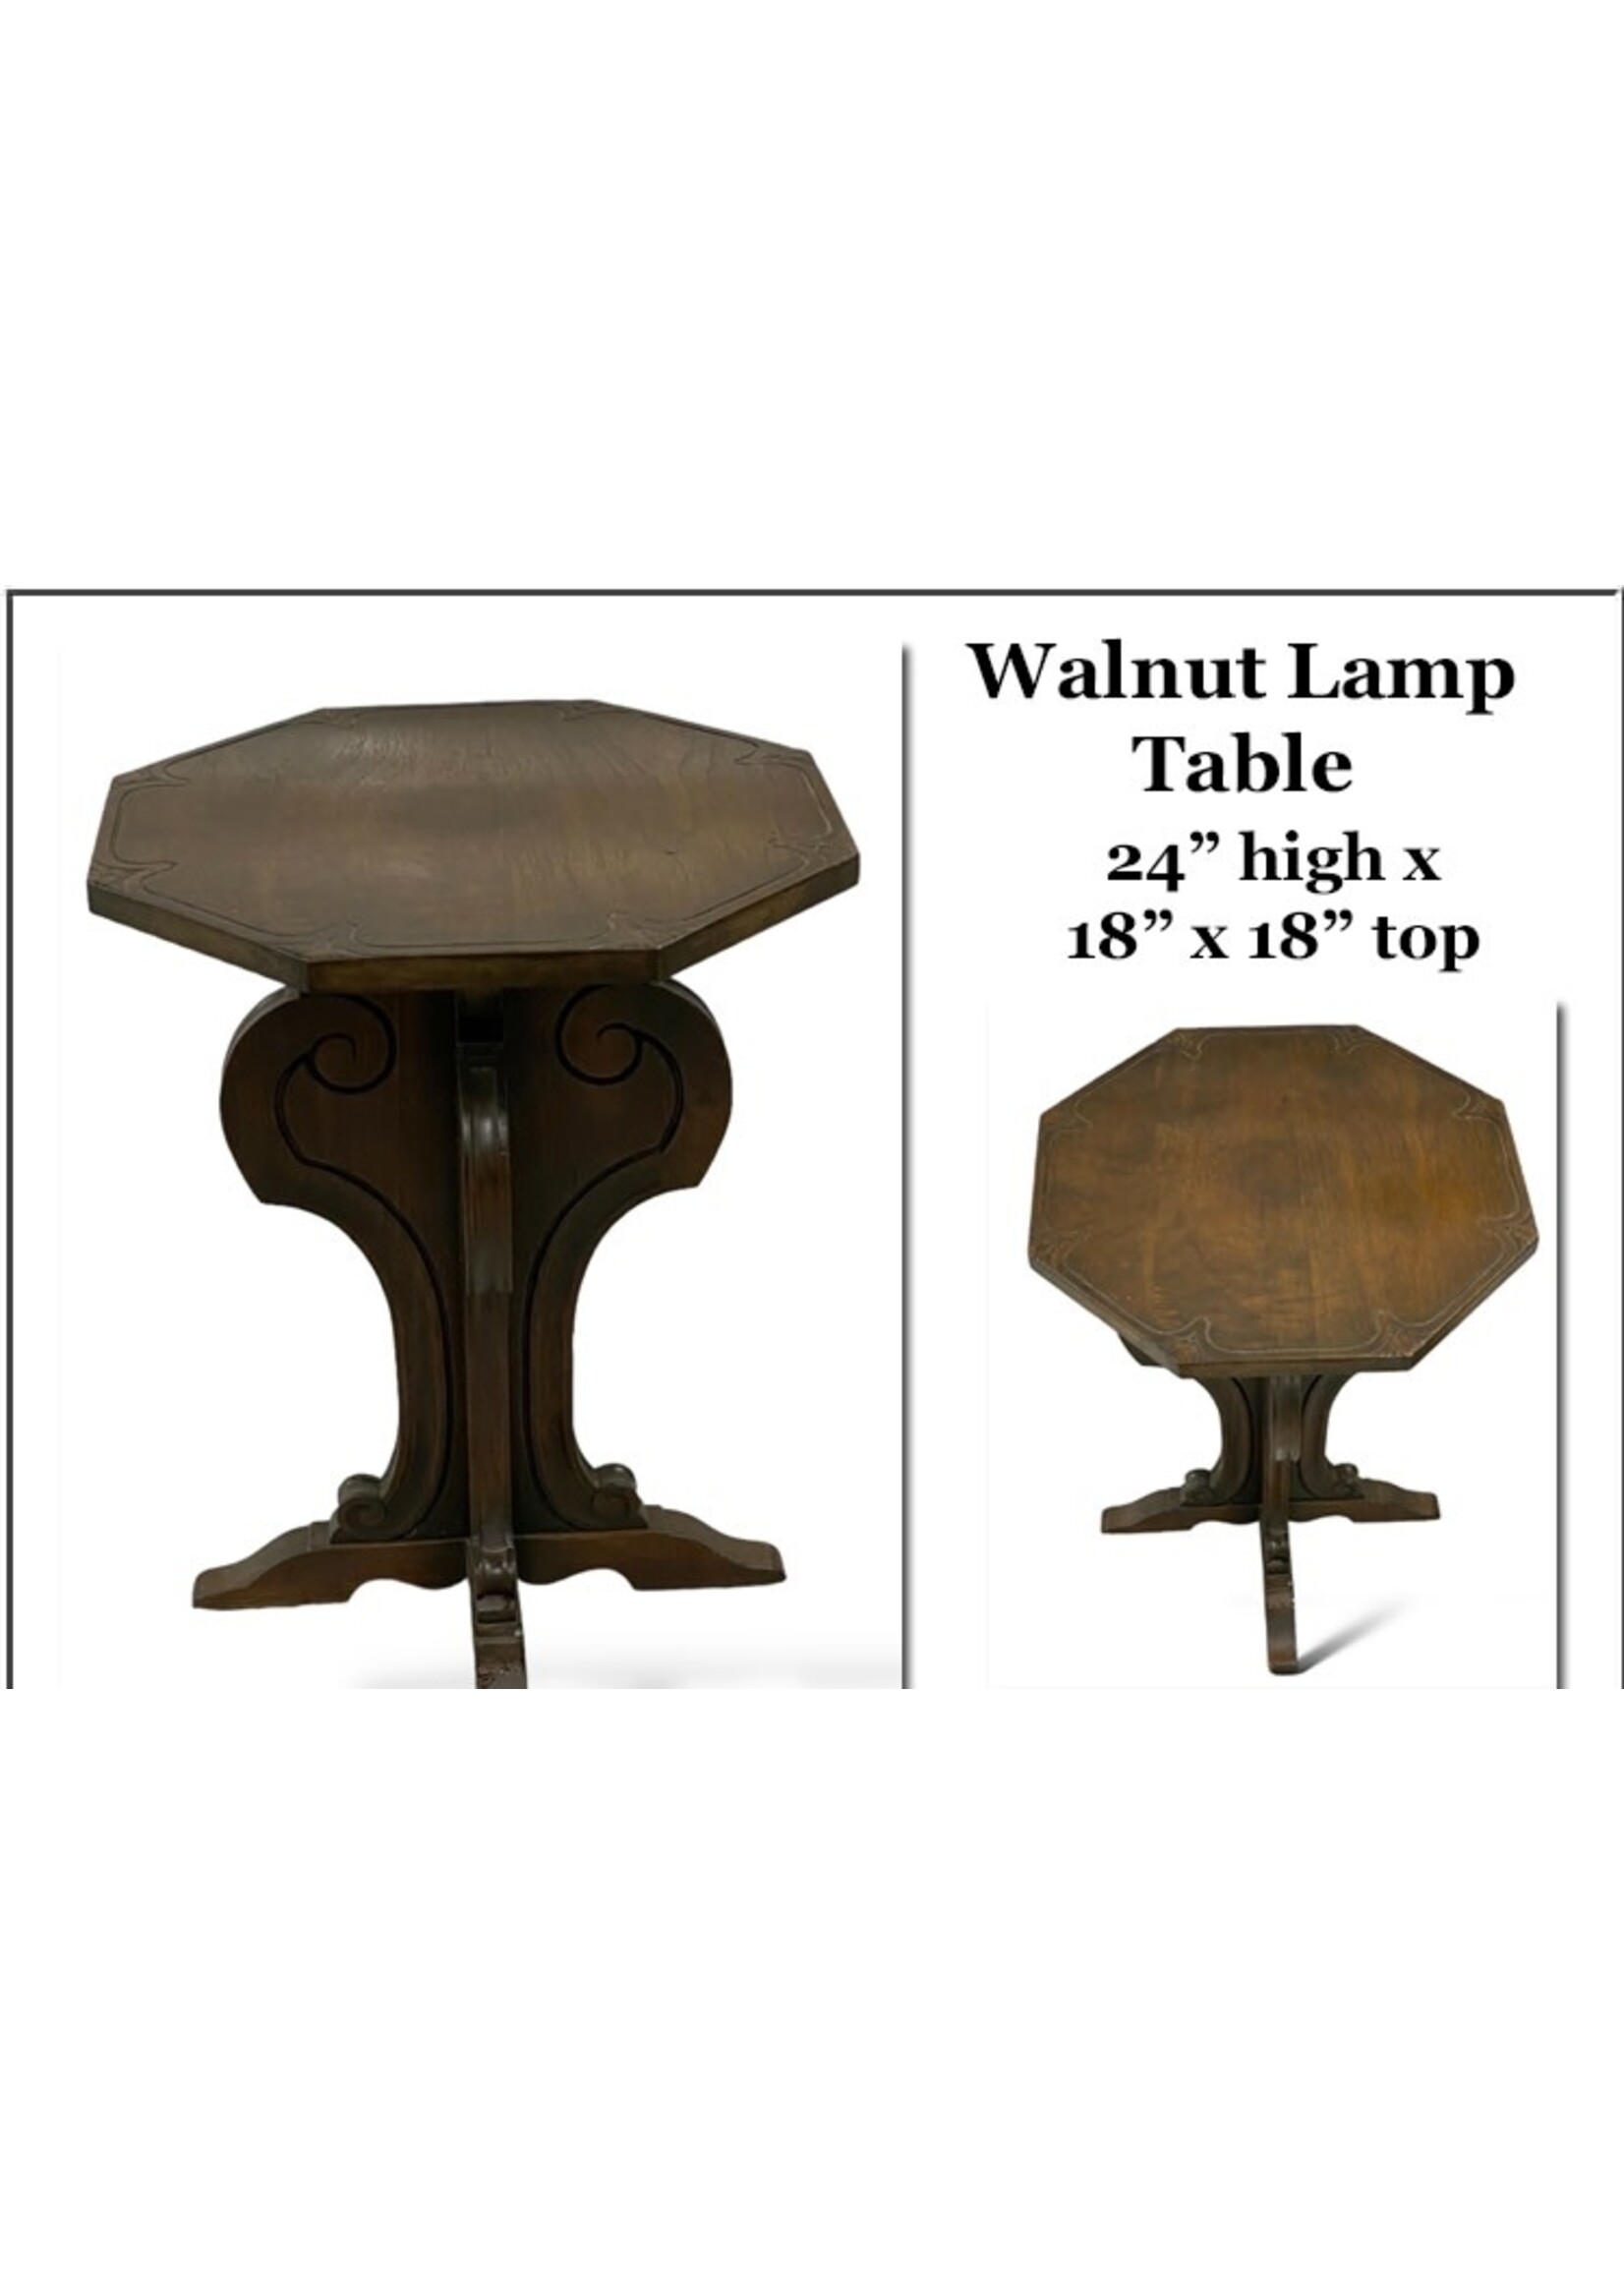 Walnut Lamp Table - 24” x 18” x 18”